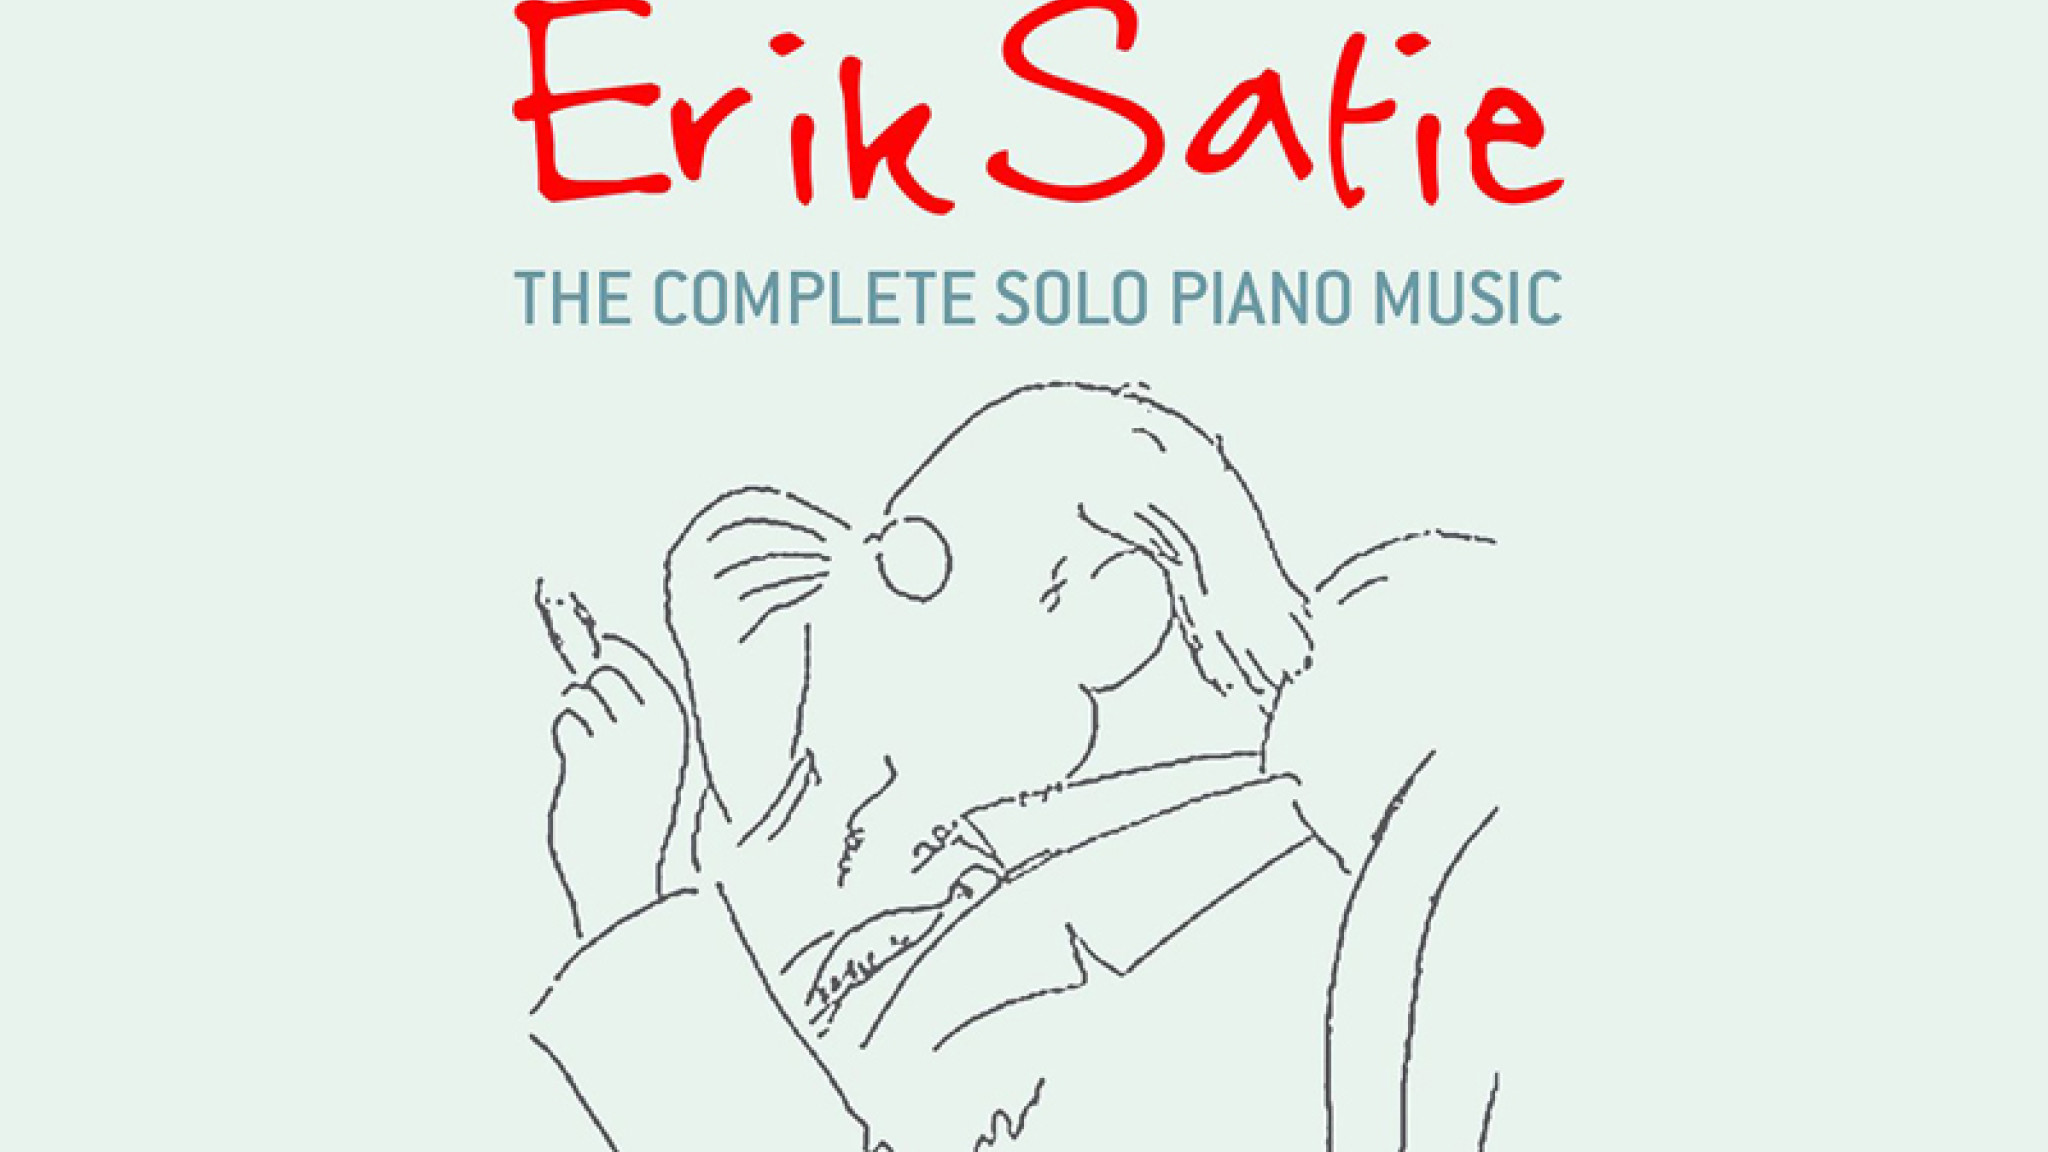 Moderner Vorreiter – Gesamtedition der Klavier-Solowerke von Erik Satie